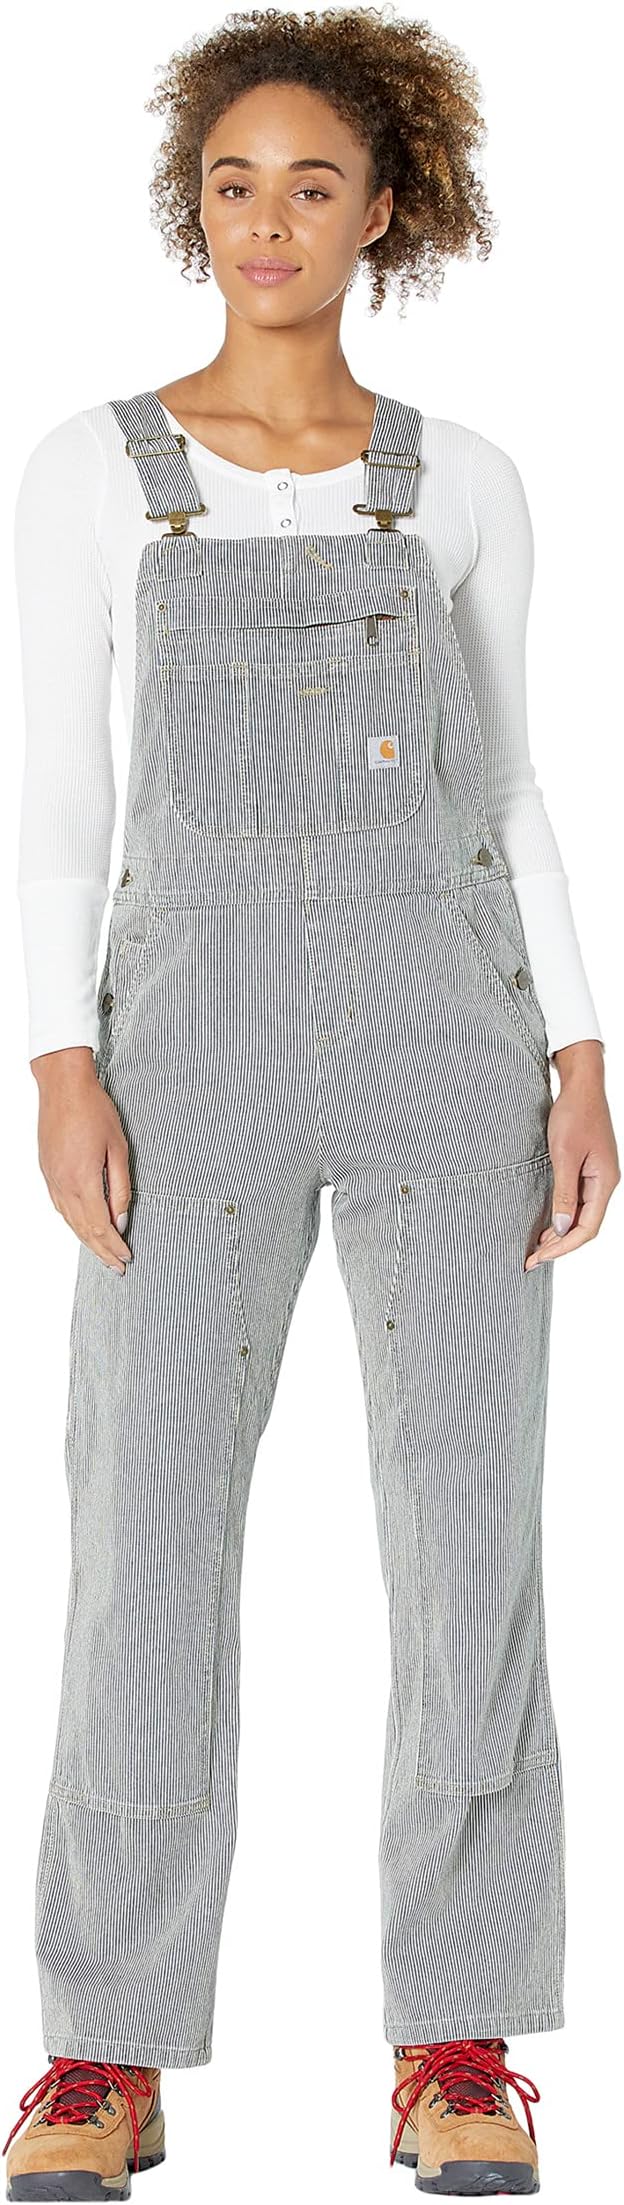 Комбинезон свободного покроя из джинсовой ткани в полоску Carhartt, цвет Railroad Stripe